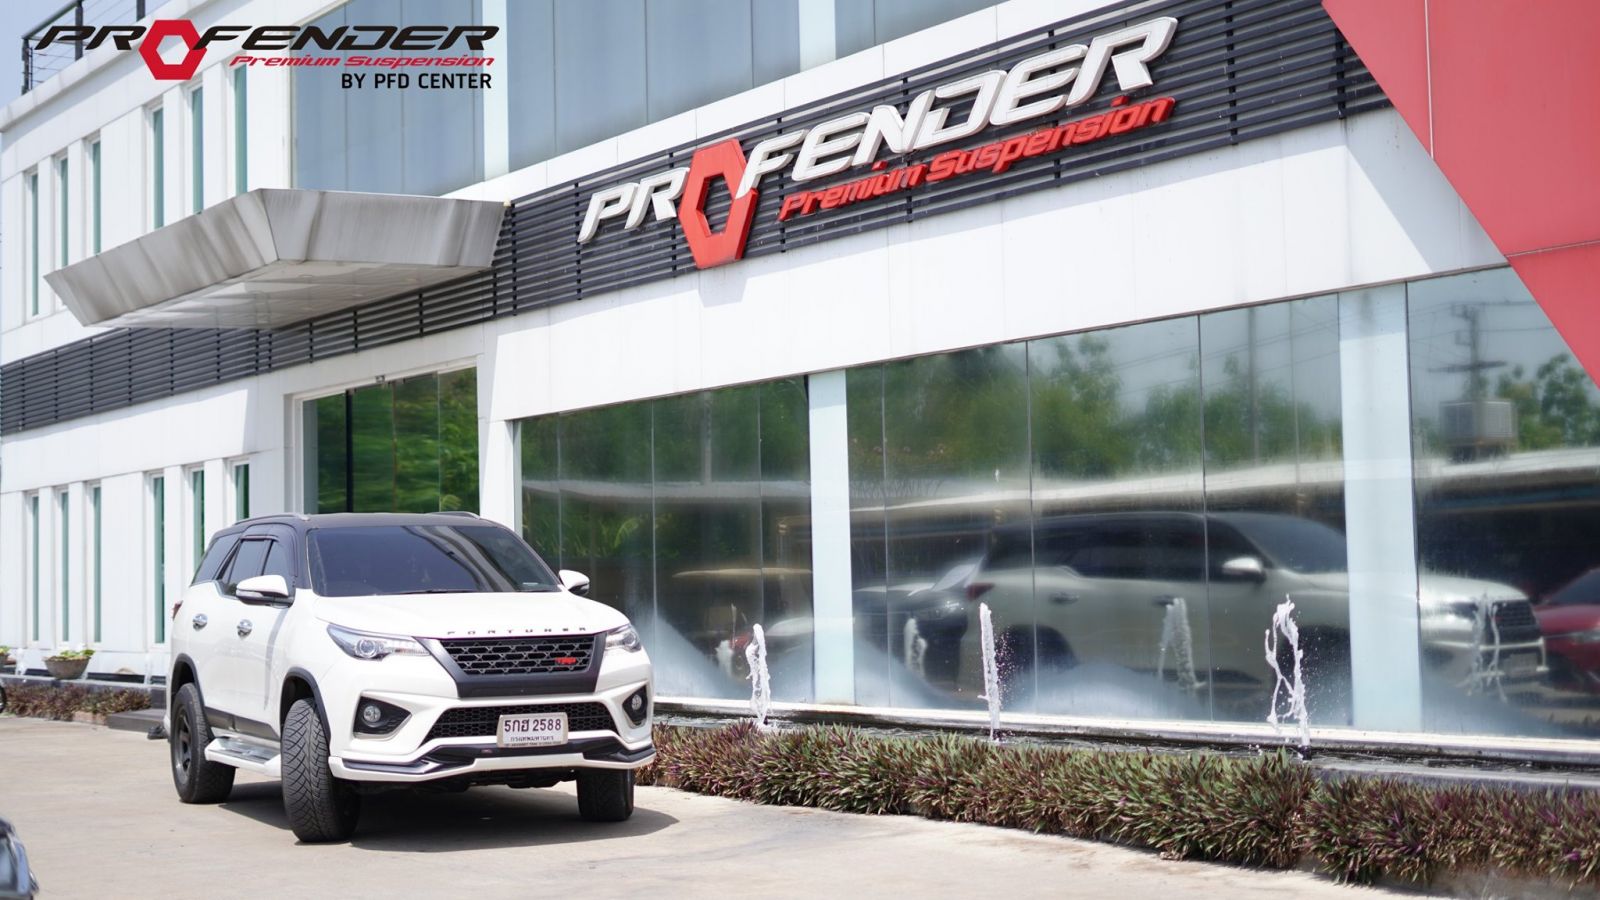 Phuộc Profender PAG chỉnh 4 chế độ dành riêng cho Ford Ranger đời 2012-2018